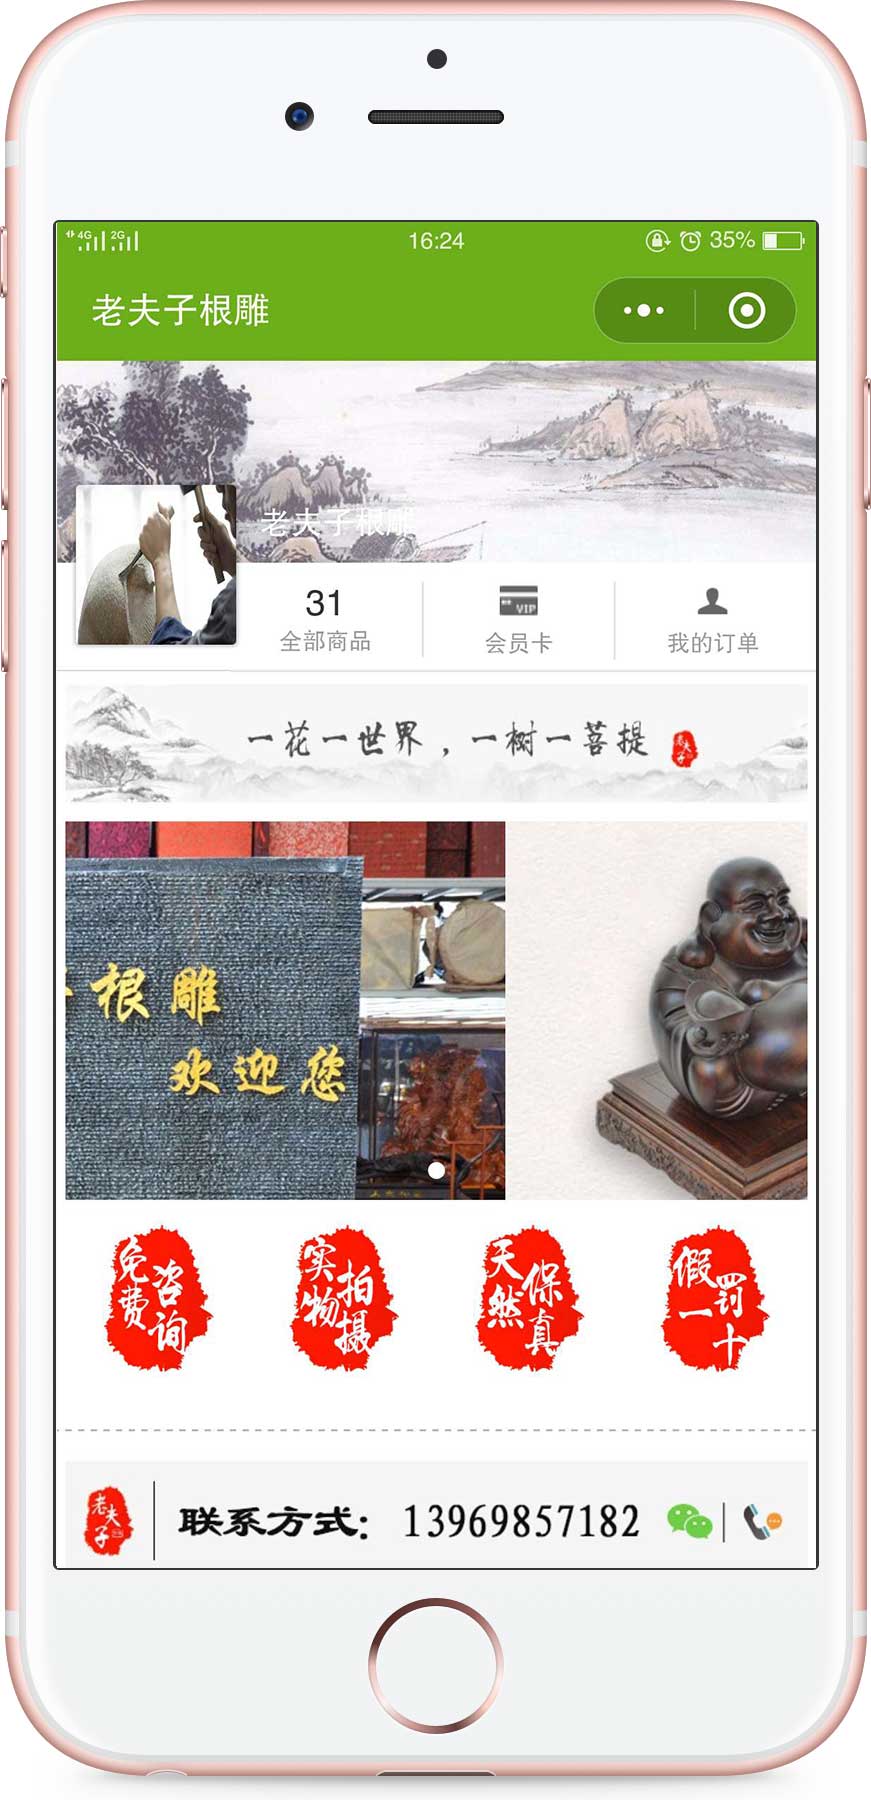 上海老夫子根雕木雕红木家居批发零售最低价